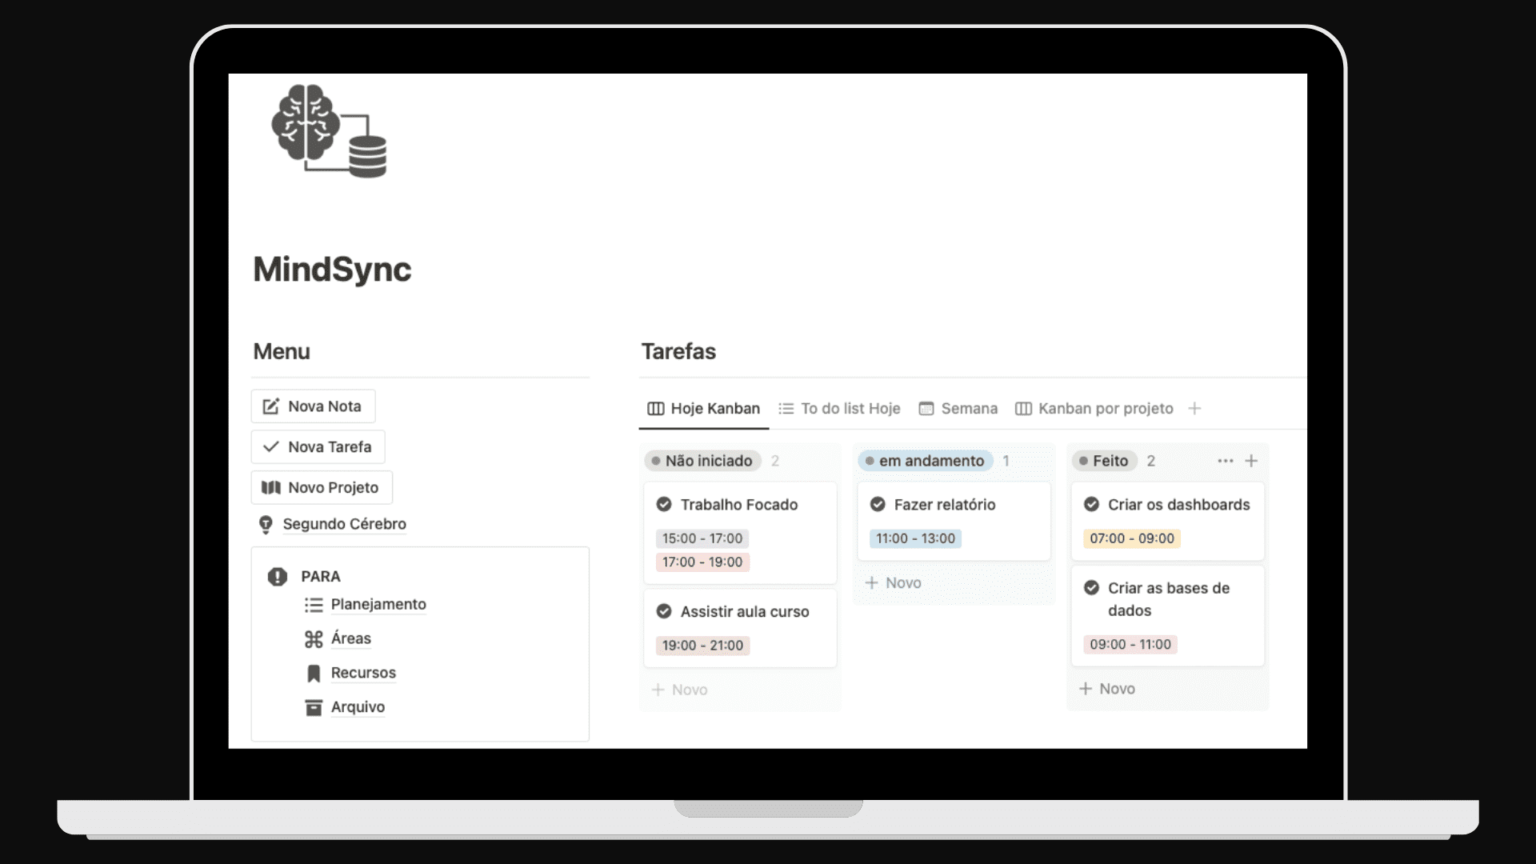 Interface gráfica do usuário de um aplicativo de gerenciamento de tarefas chamado MindSync exibida em um monitor, mostrando diferentes seções como menu à esquerda e lista de tarefas com status como 'Não iniciado', 'Em andamento' e 'Feito' à direita.